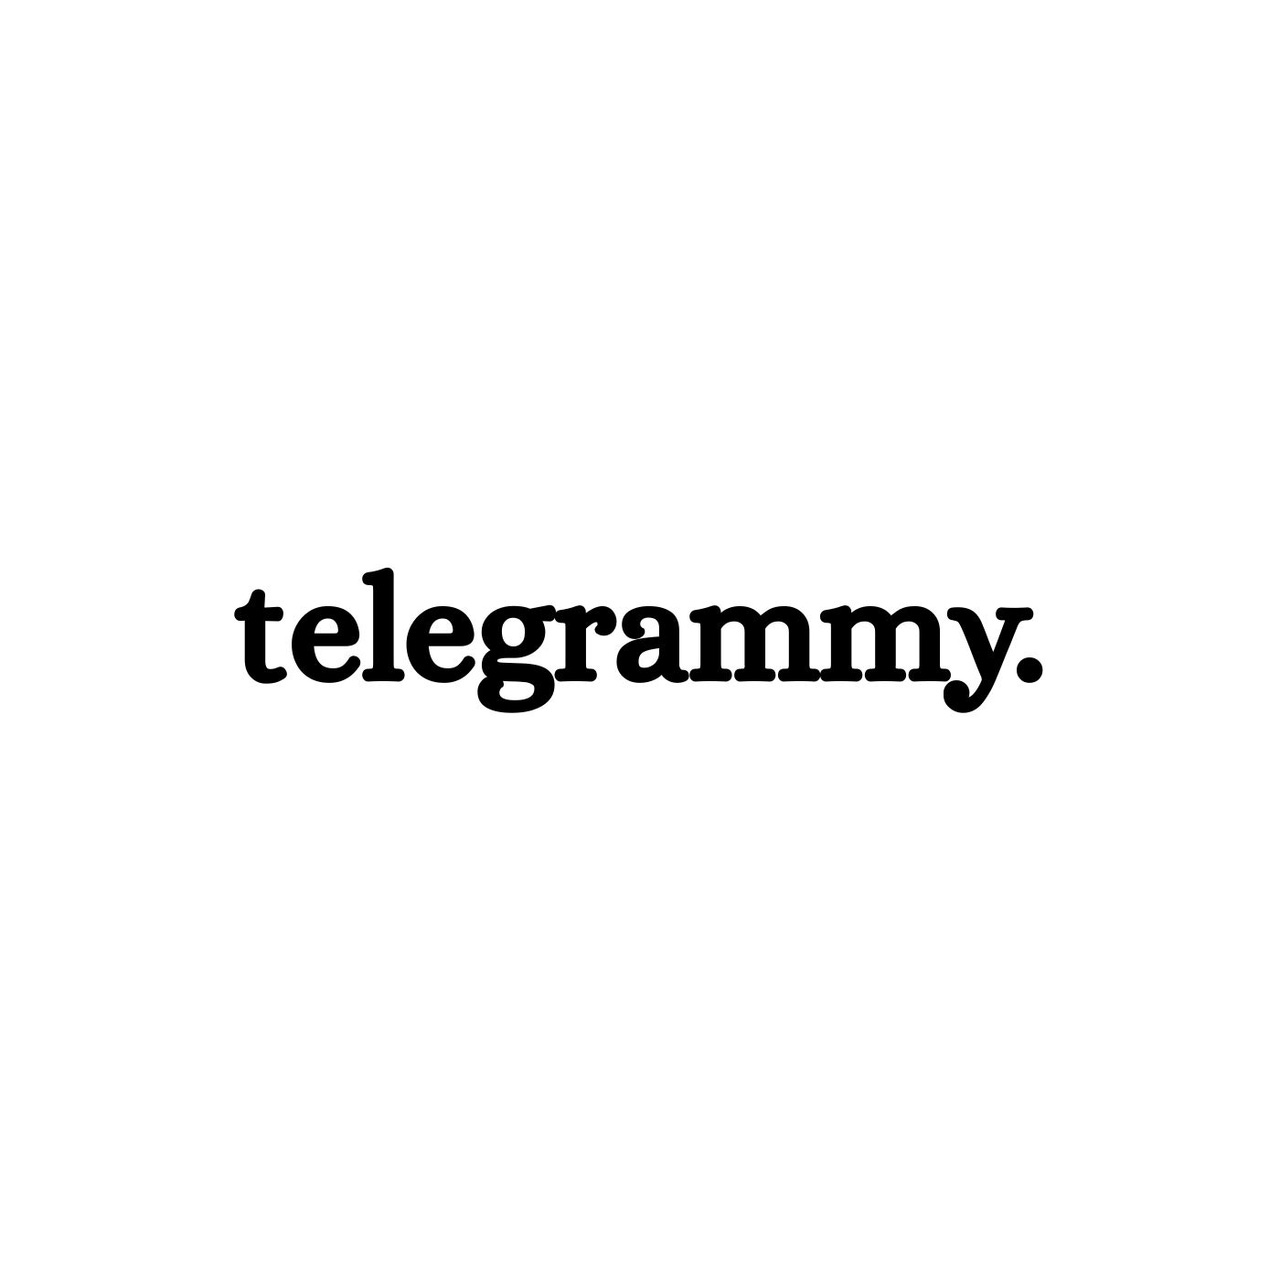 telegrammy